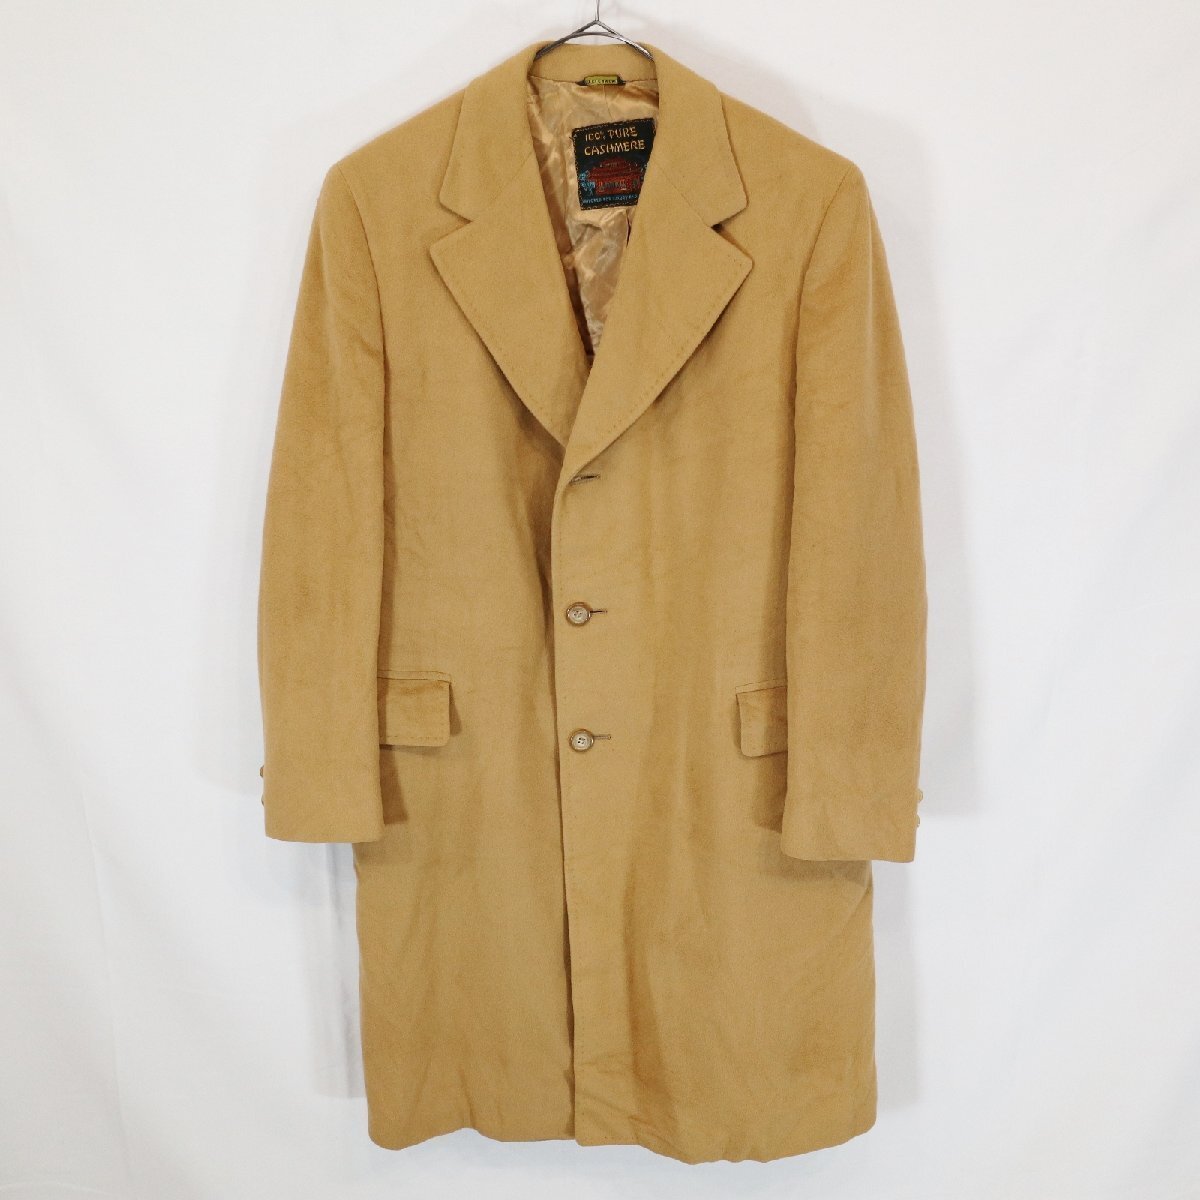 LANDON`S Пальто Честерфилд формальный костюм бизнес ходить на работу winter одежда Brown ( мужской L соответствует ) M7978 1 иен старт 